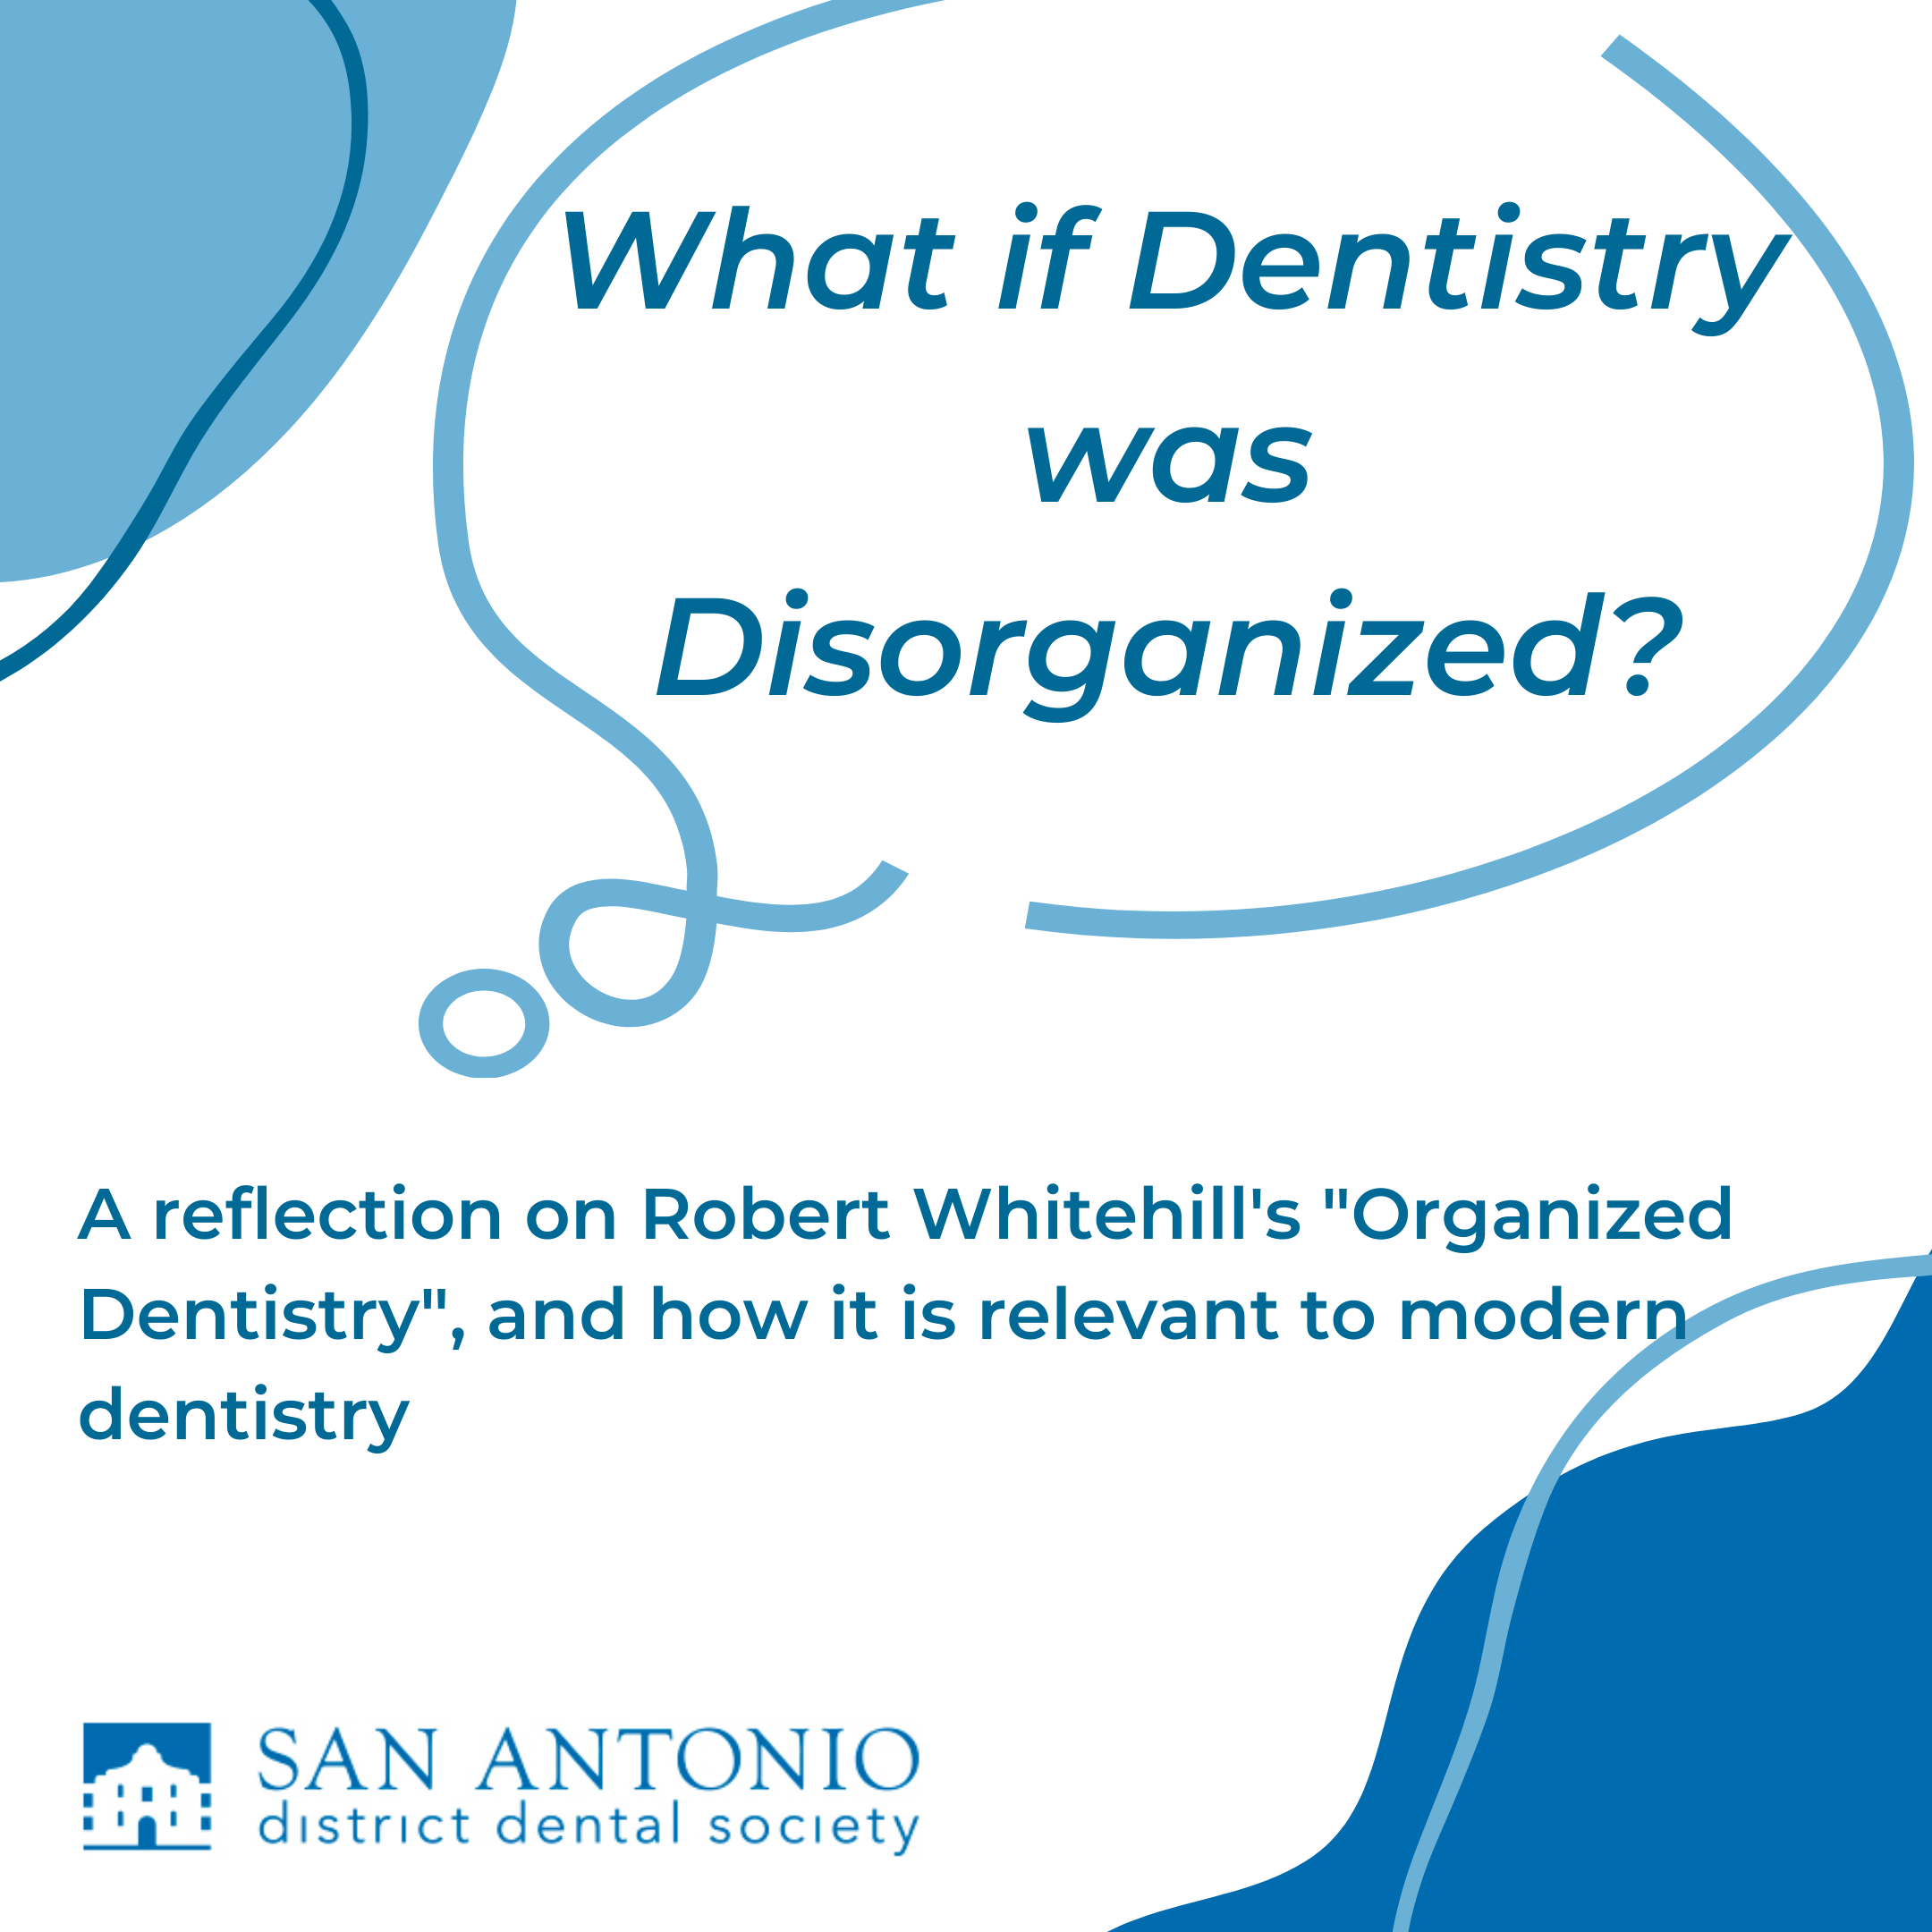 Disorganized dentistry